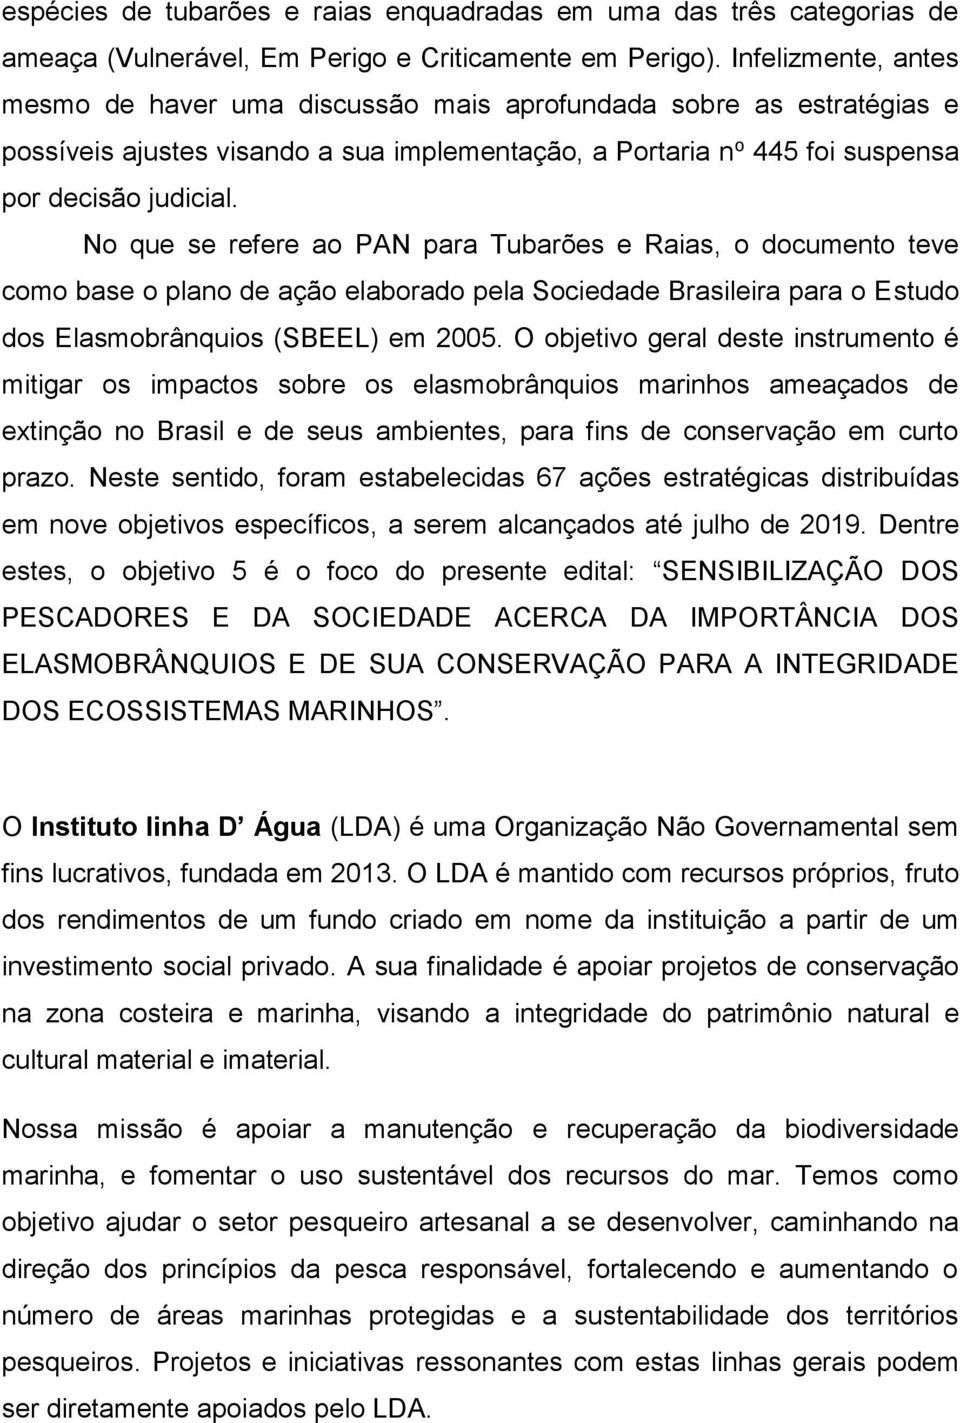 No que se refere ao PAN para Tubarões e Raias, o documento teve como base o plano de ação elaborado pela Sociedade Brasileira para o Estudo dos Elasmobrânquios (SBEEL) em 2005.